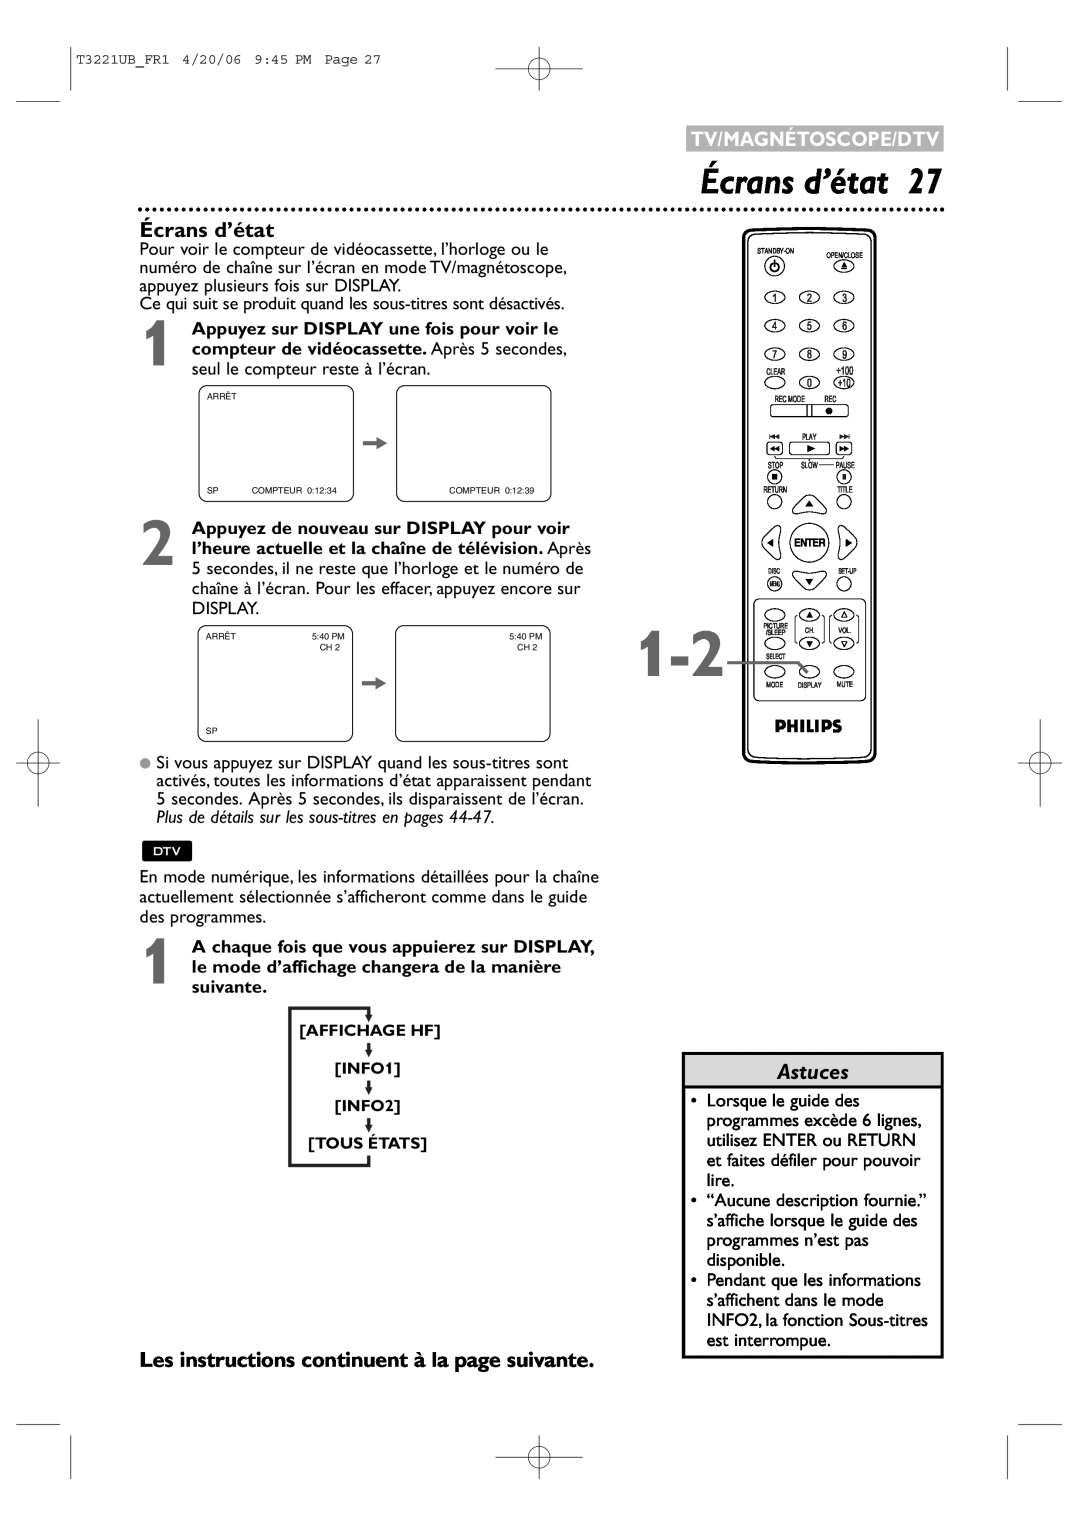 Philips 27PC4326/37 quick start Écrans d’état, Les instructions continuent à la page suivante, Astuces, Tv/Magnétoscope/Dtv 